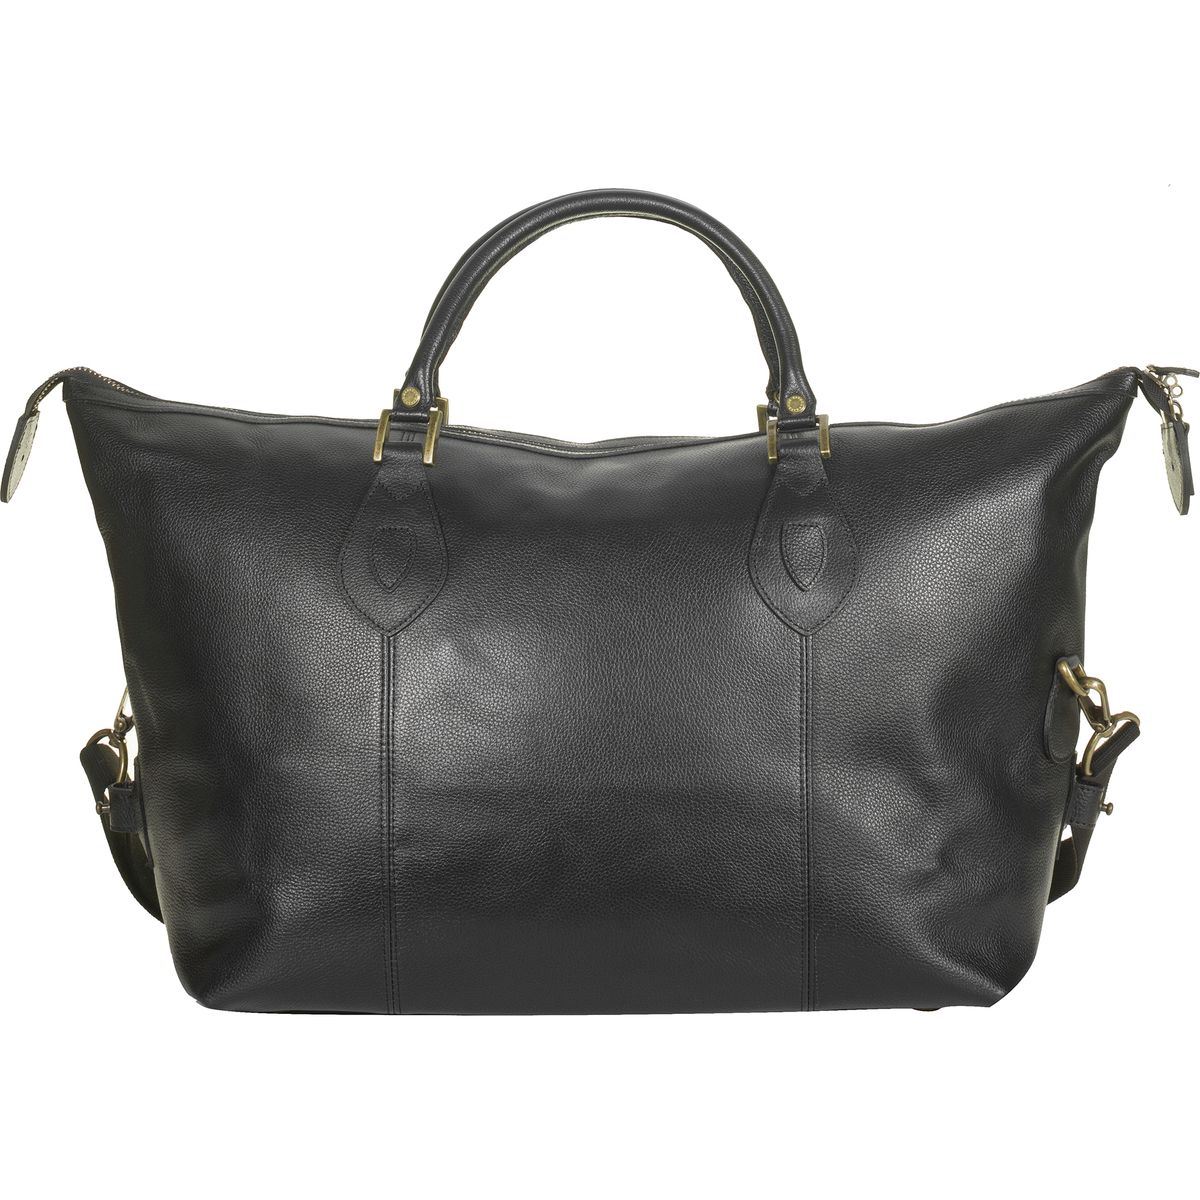 Leather Med Travel Explorer Bag